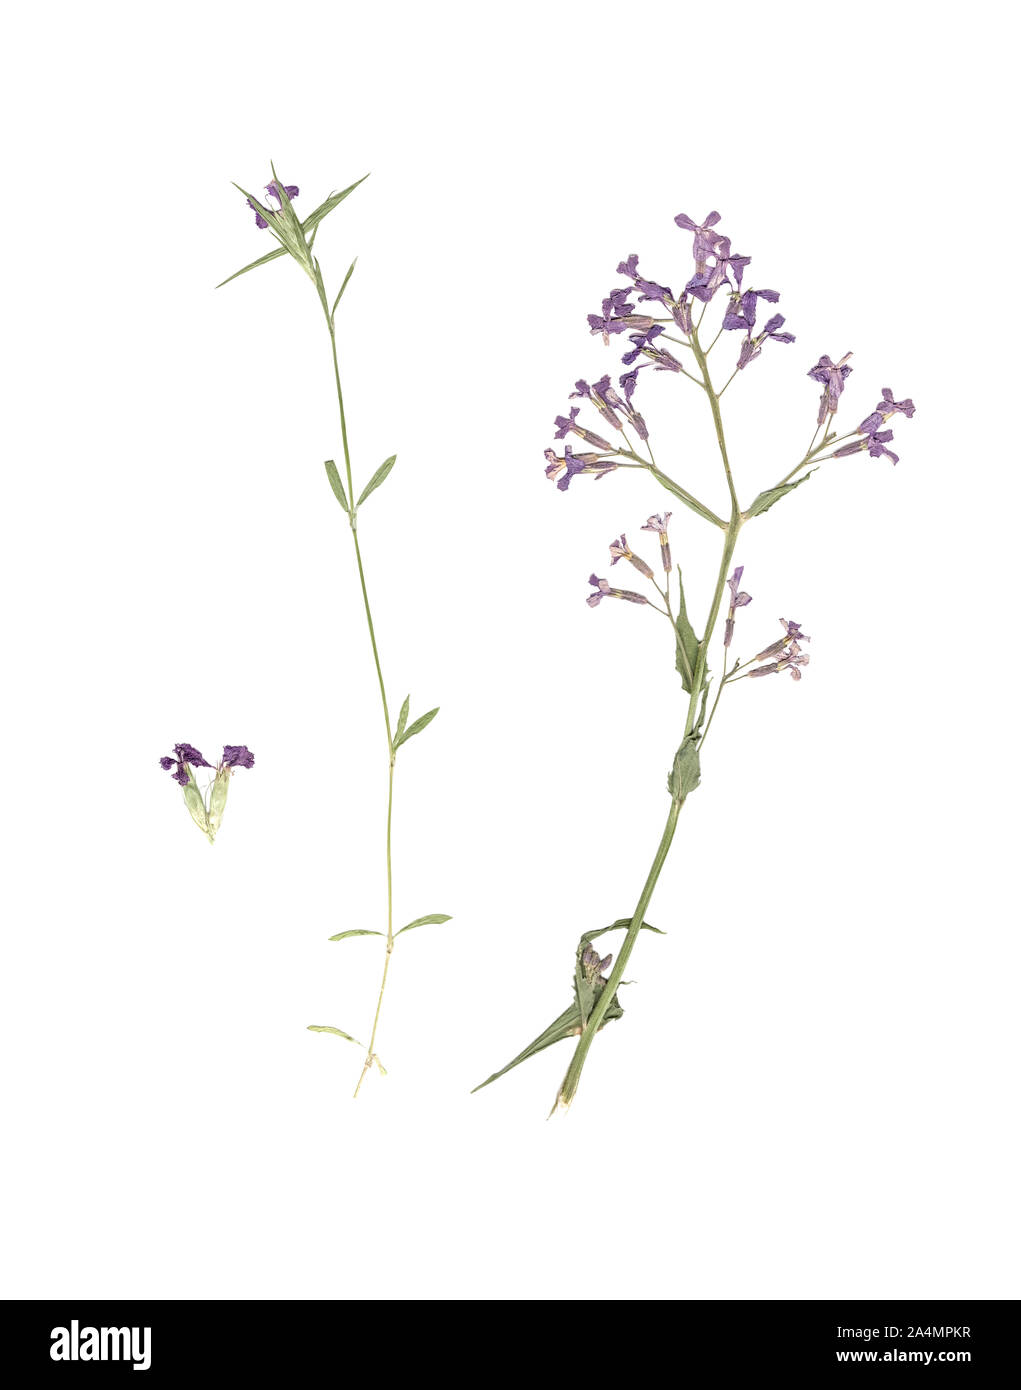 Herbier. Composition de l'herbe séchée et pressée avec fleurs bleues et violettes sur fond blanc. Banque D'Images